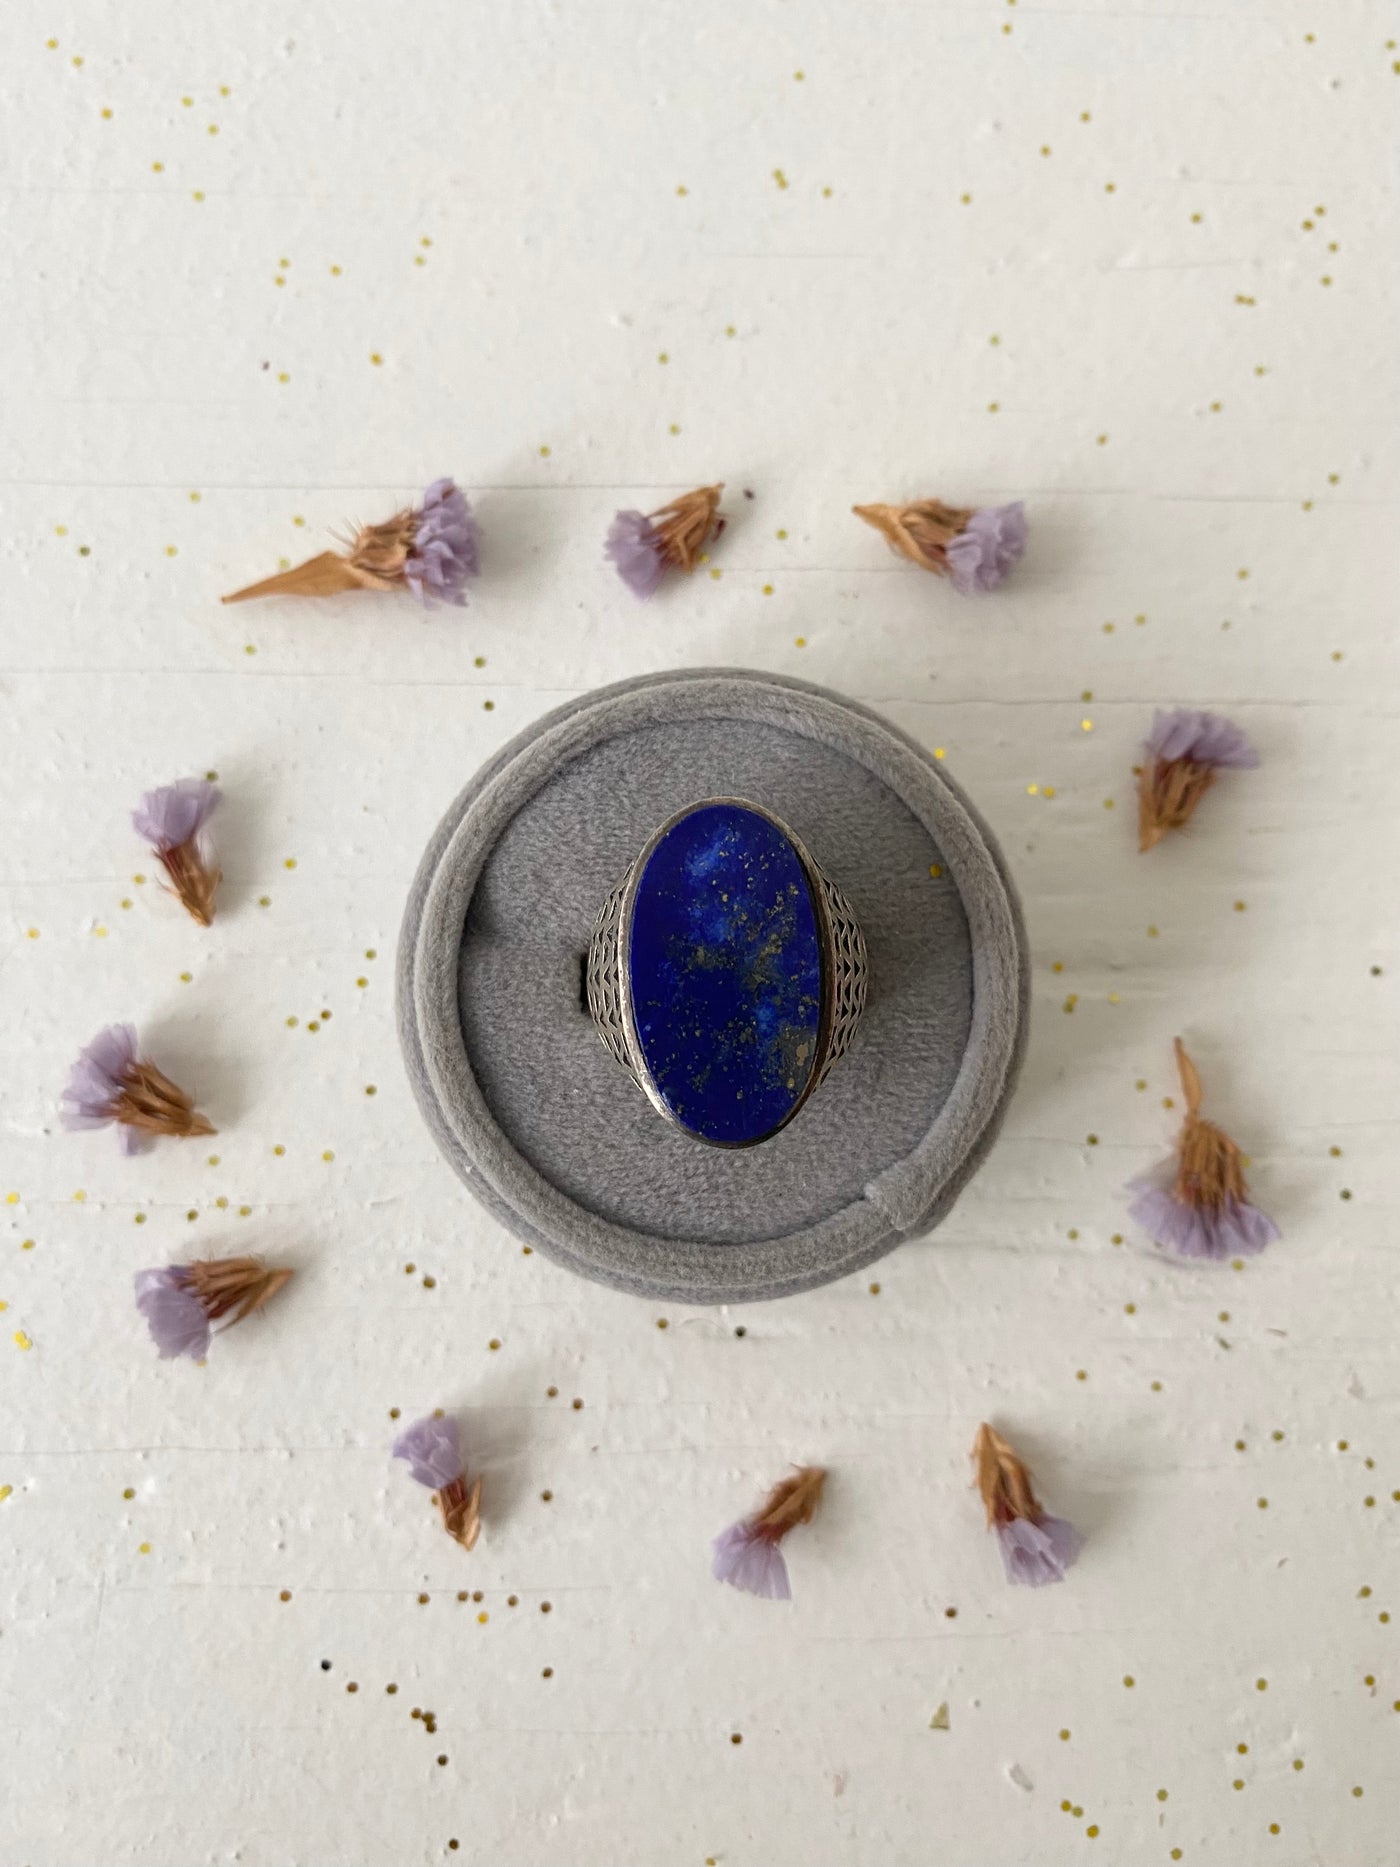 Vintage Lapis Lazuli Big Gemstone Ring